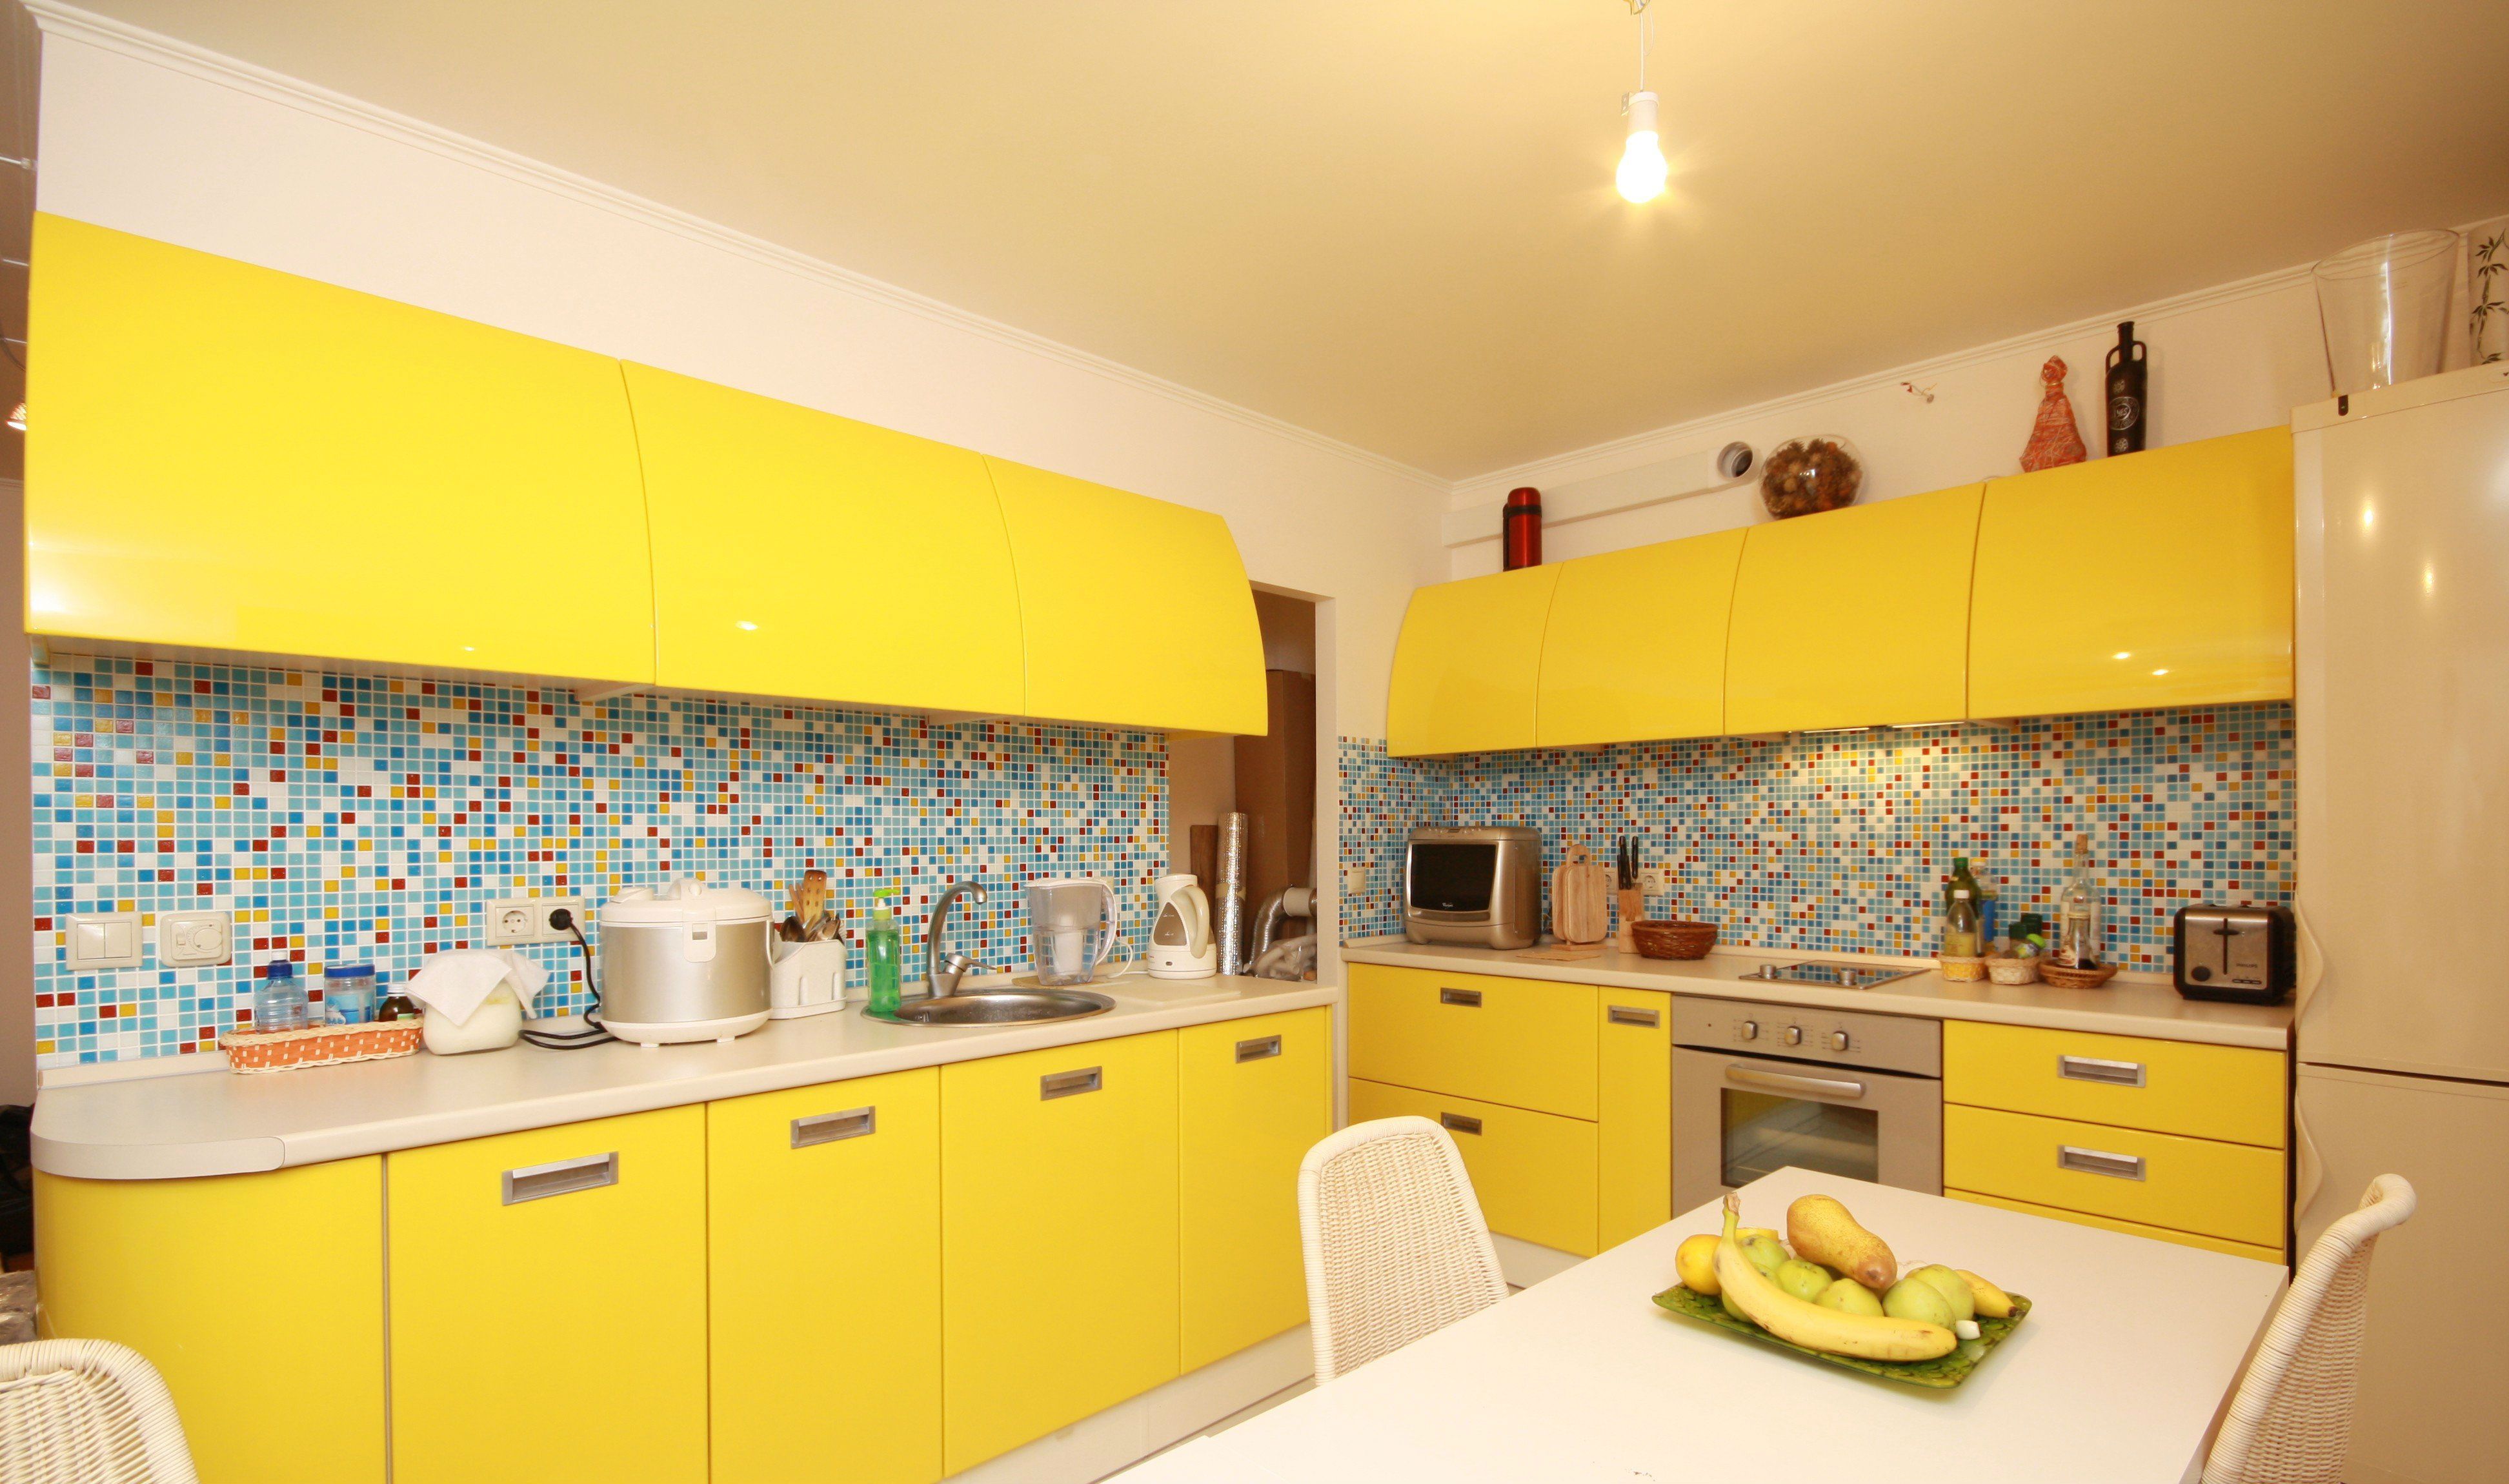 Бело желтая кухня. Желтые кухни. Кухня в желтом цвете. Желтая кухня в интерьере. Интерьер кухни в желтых тонах.